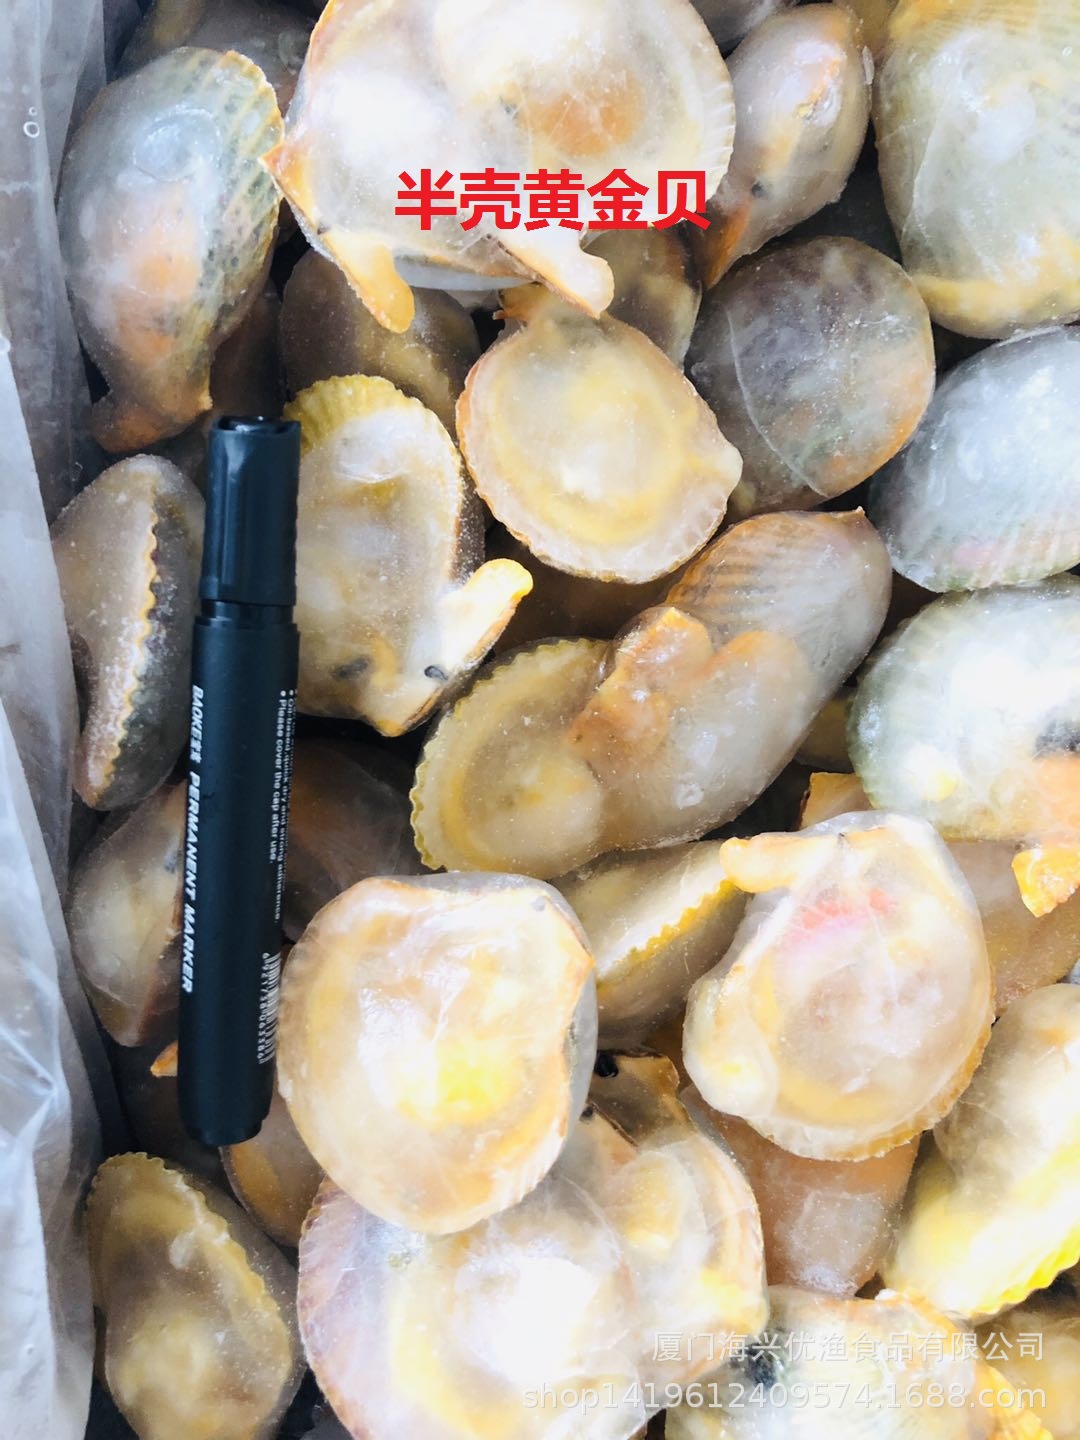 冷冻扇贝 自助餐 排挡用 扇贝 贵妃贝 半壳扇贝 火锅食材约160个-阿里巴巴